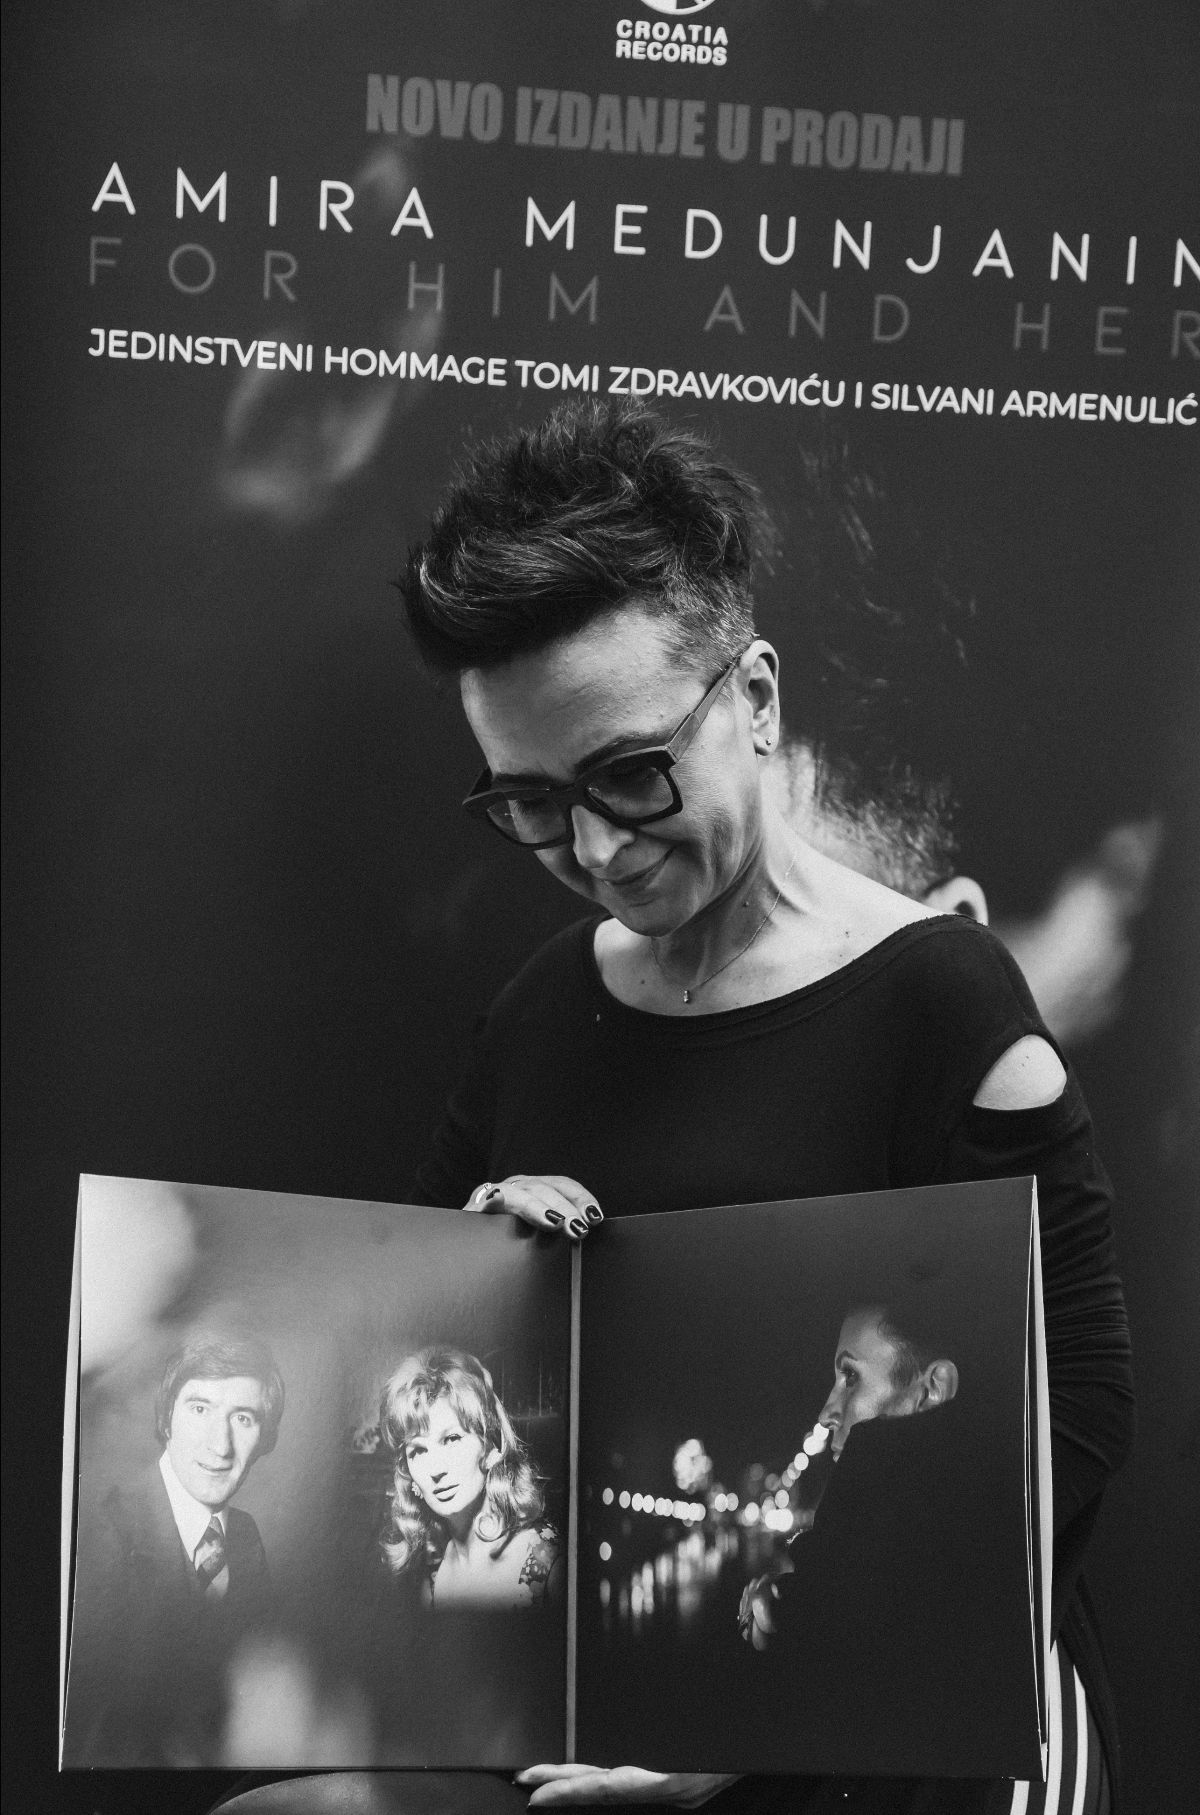 World music diva Amira Medunjanin predstavila album For Him and Her